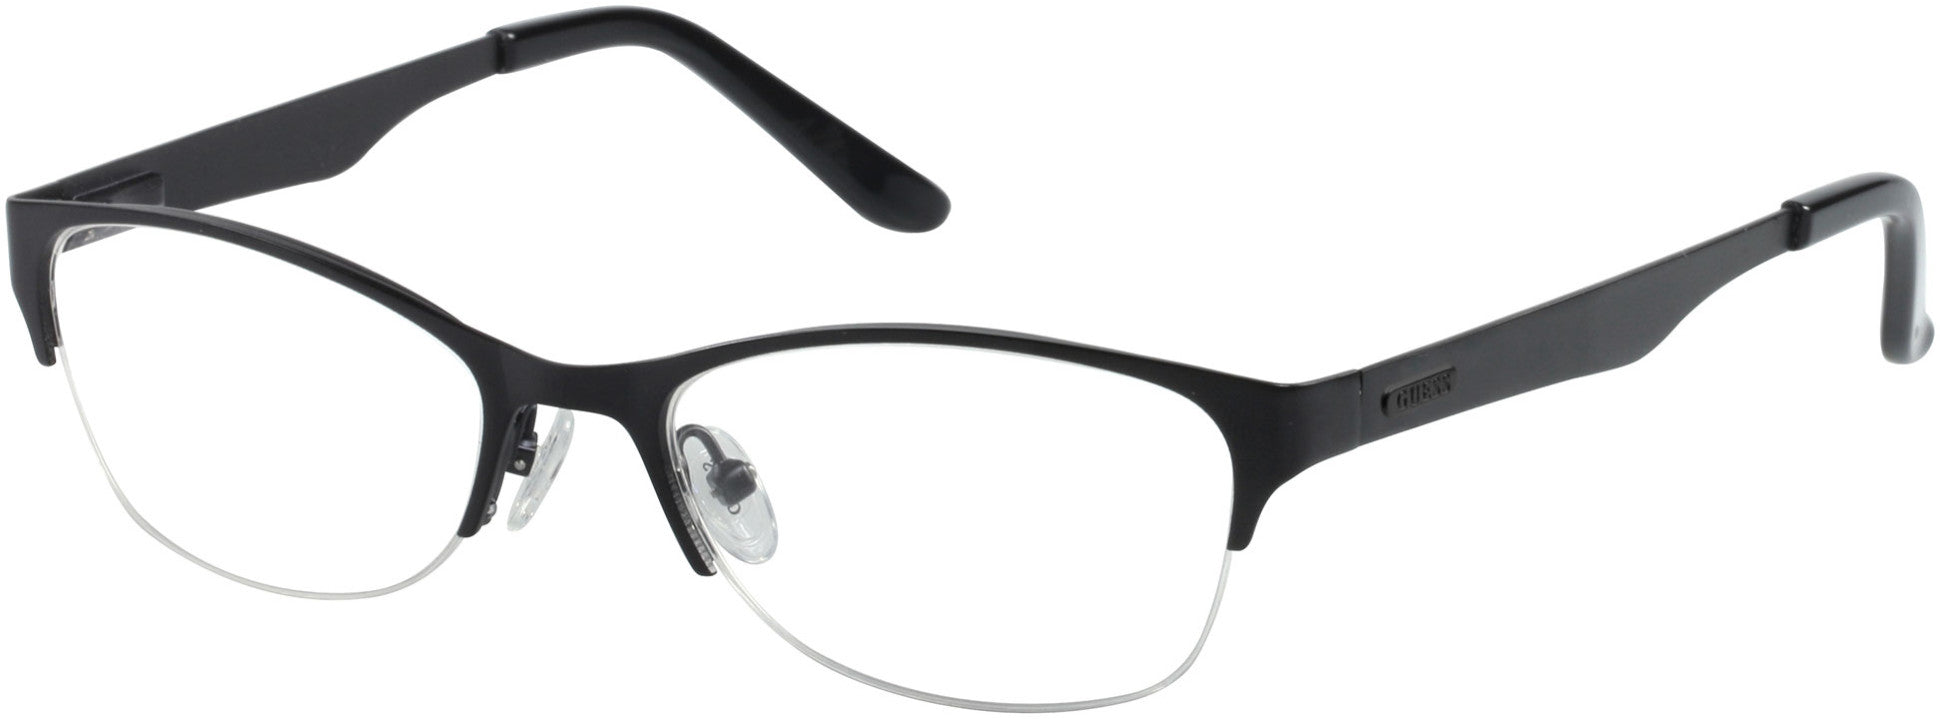 Guess GU2469 Round Eyeglasses B84-B84 - Black